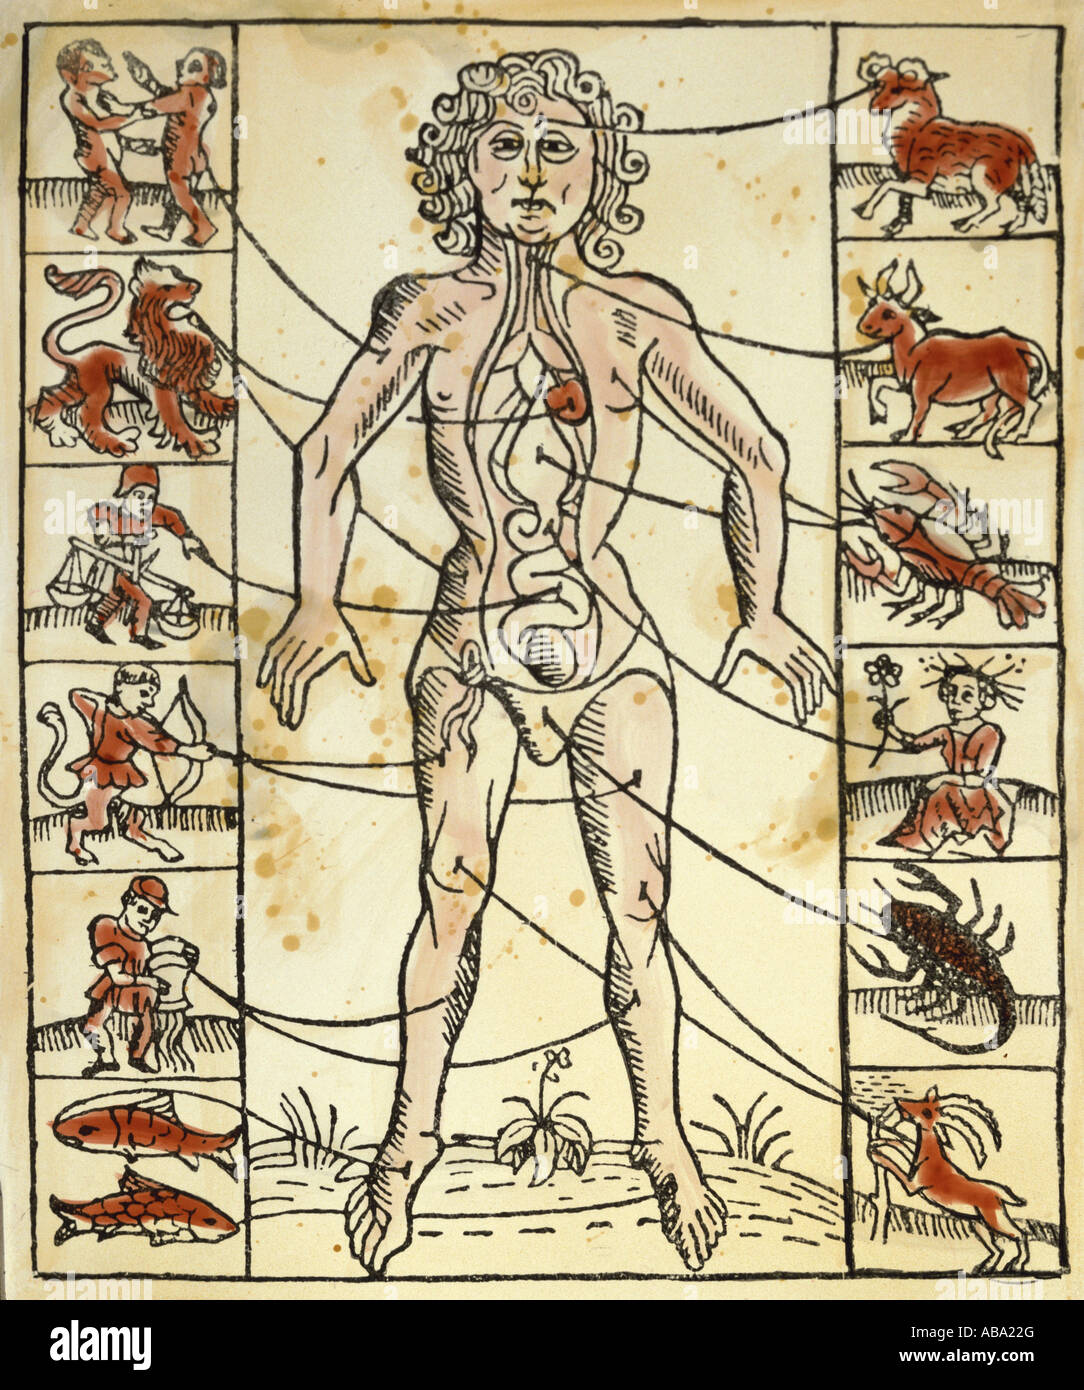 Medicina, trattamento, salasso, venezione e zodiaco, taglio di legno colorato, « artyrologicum der Heiligen », Strassburg, 1484, collezione privata, Foto Stock